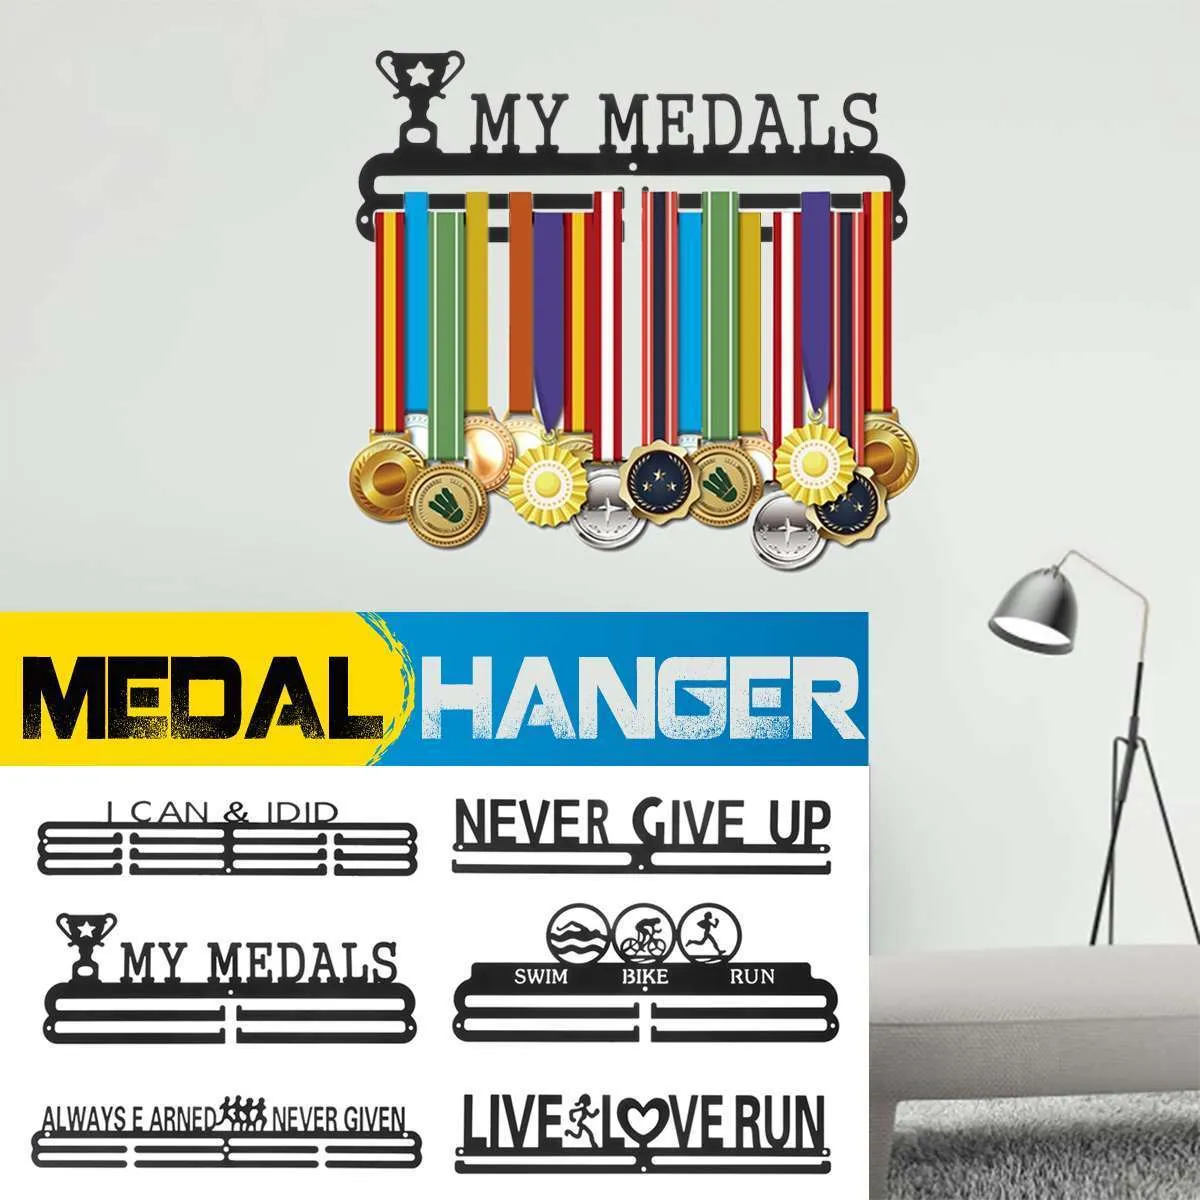 Вешалка для медалей, стойка для спортивных медалей 30-45 лет, бегун, плавание, футбол, баскетбол, марафоны, подарок, домашний декор 2011254420656